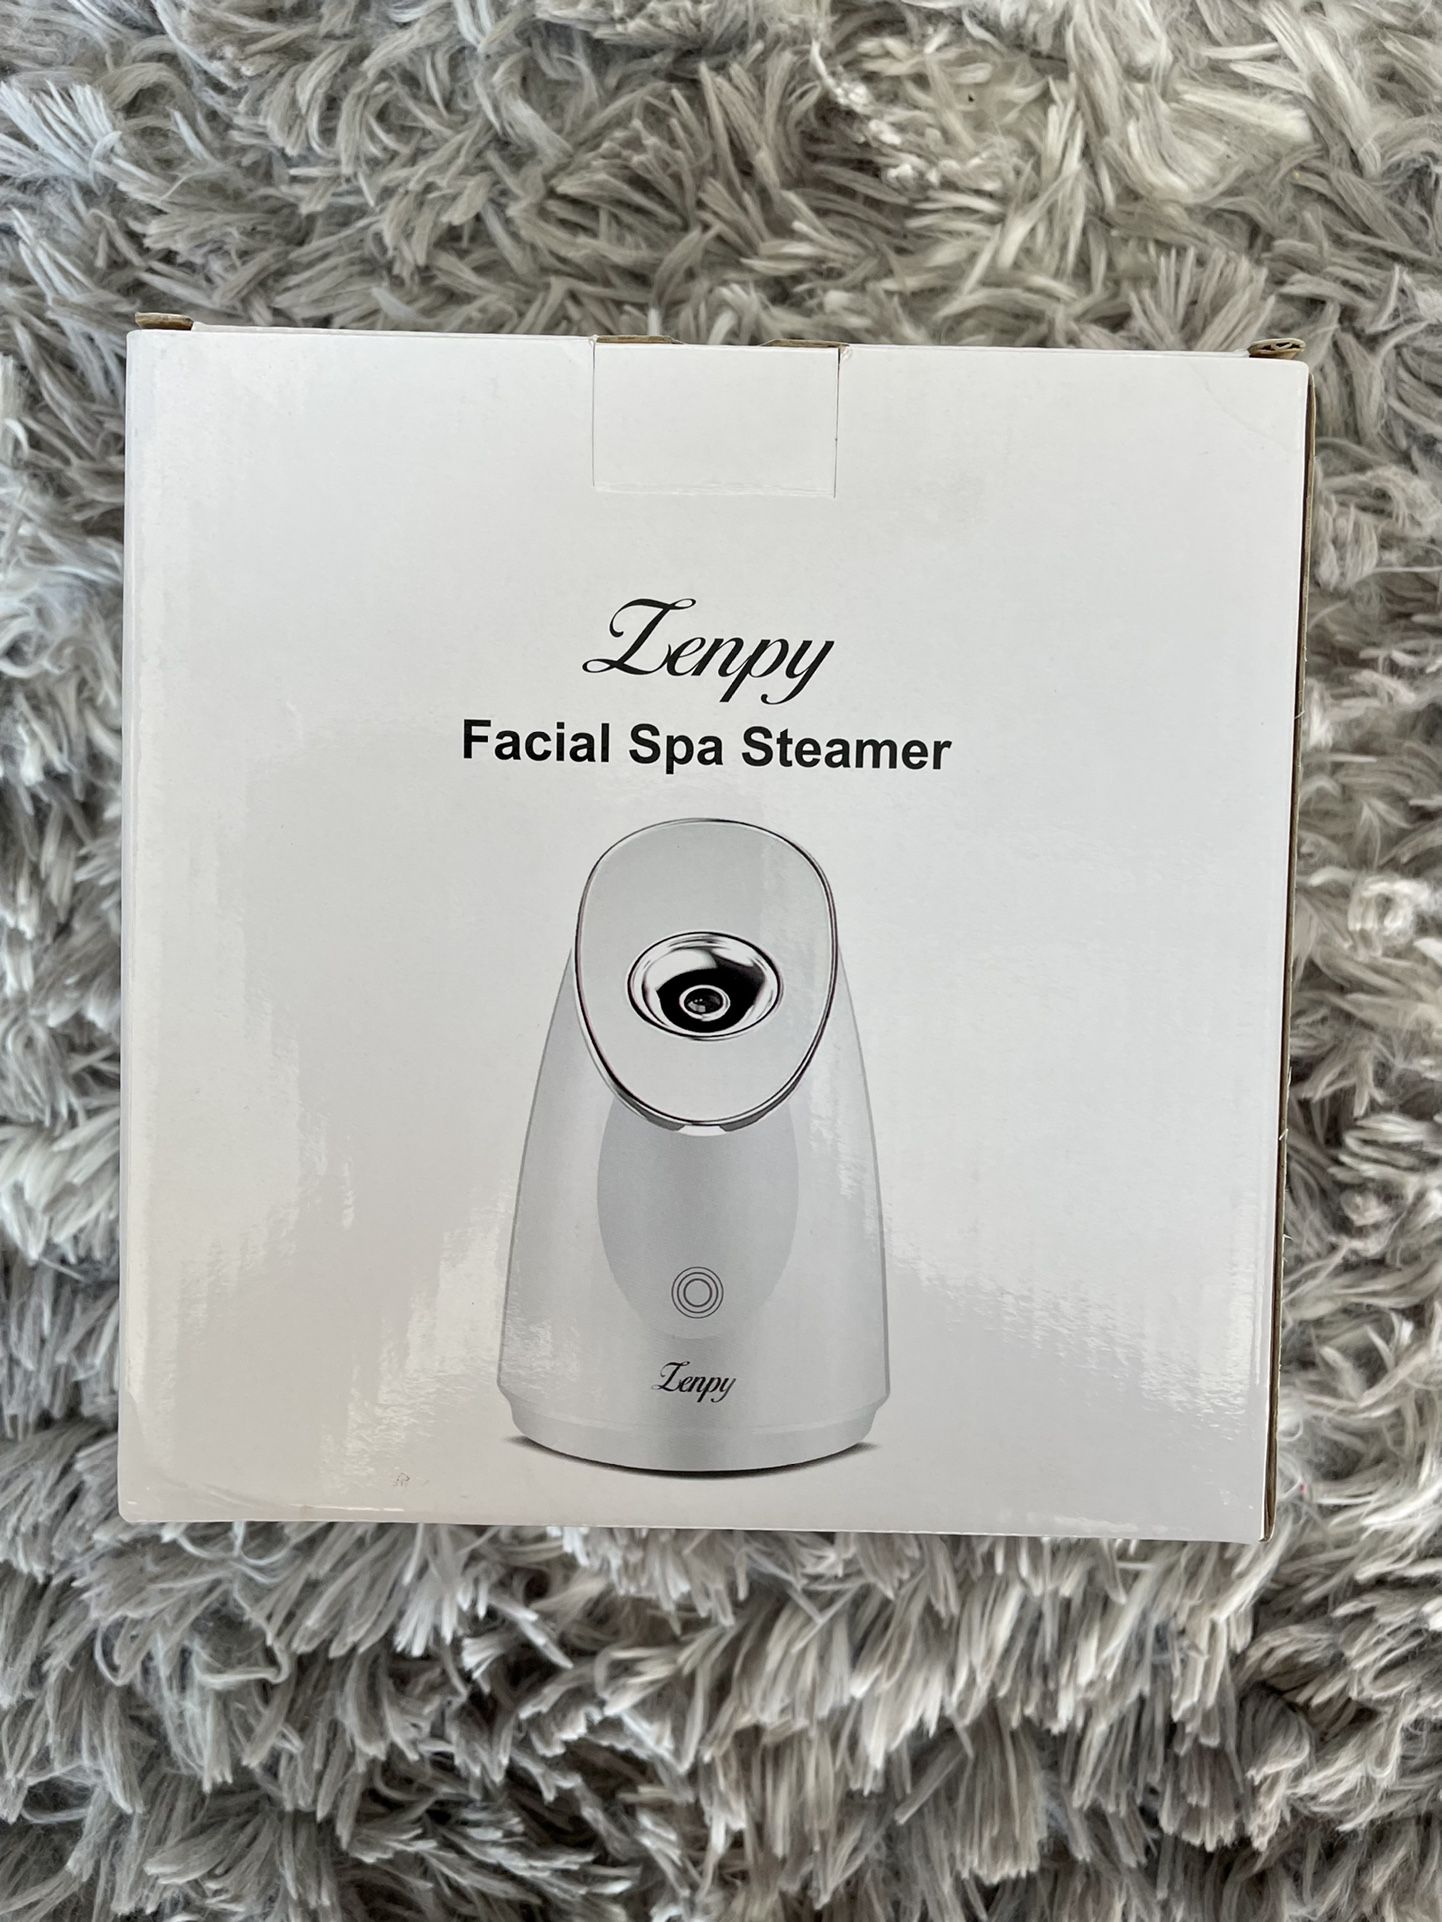 Facial Spa Steamer / Face Steamer 